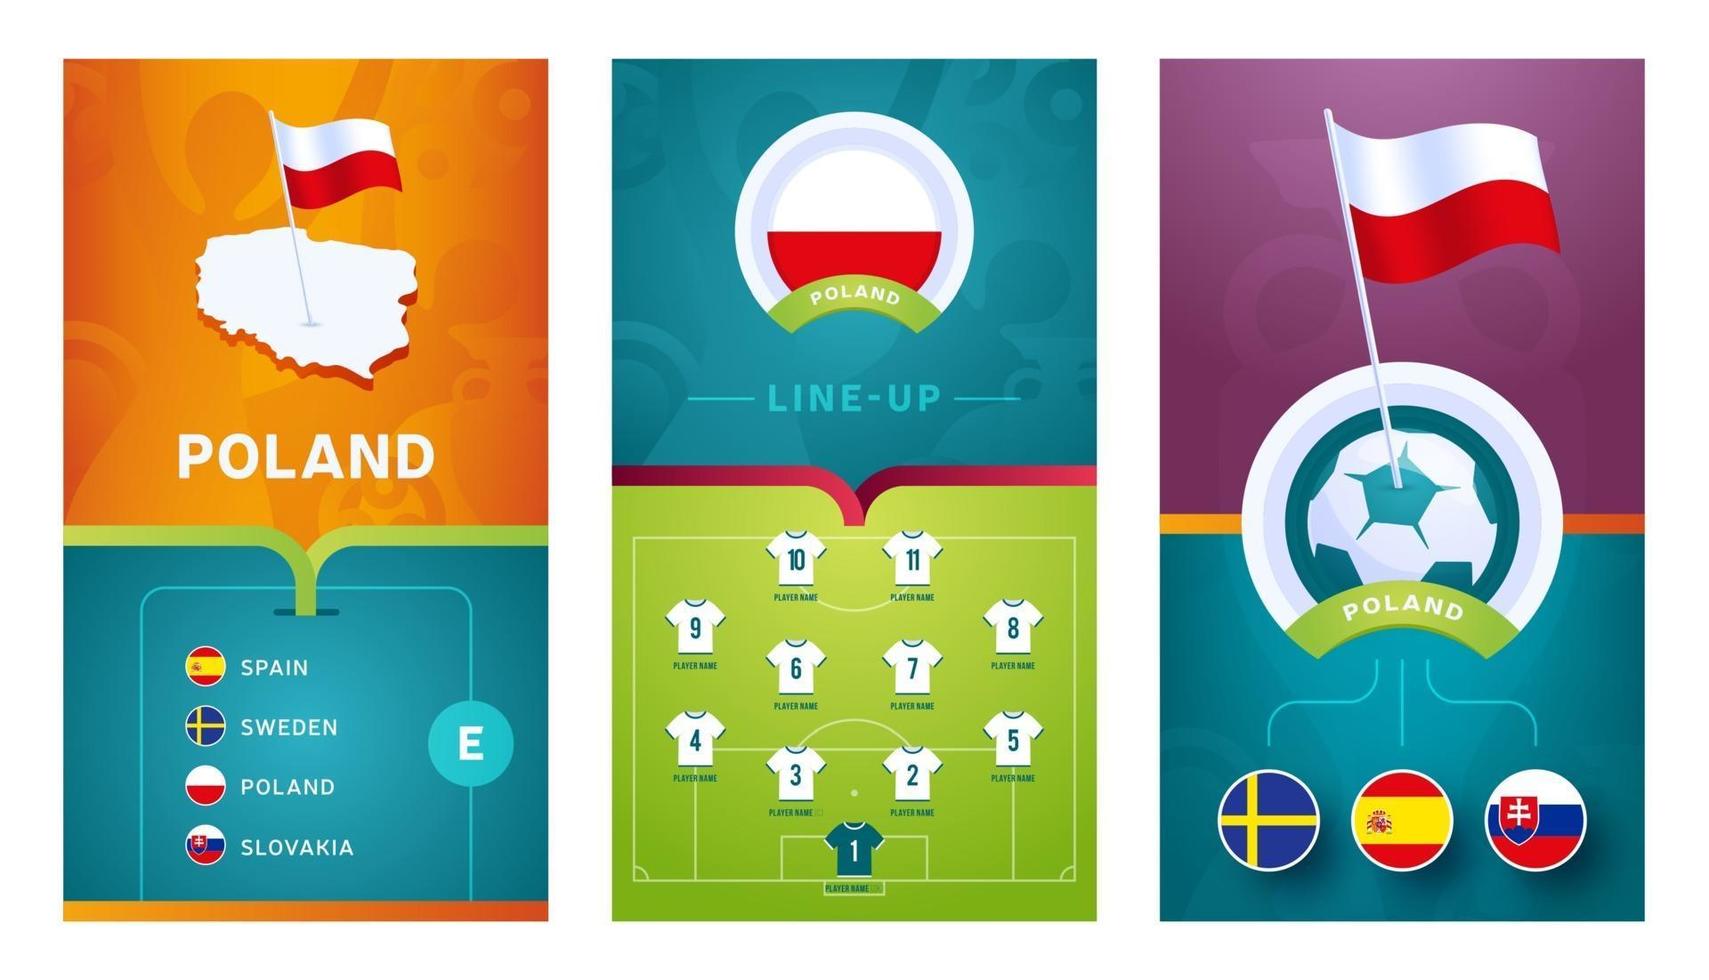 conjunto de banners verticales de fútbol europeo del equipo de polonia para redes sociales vector